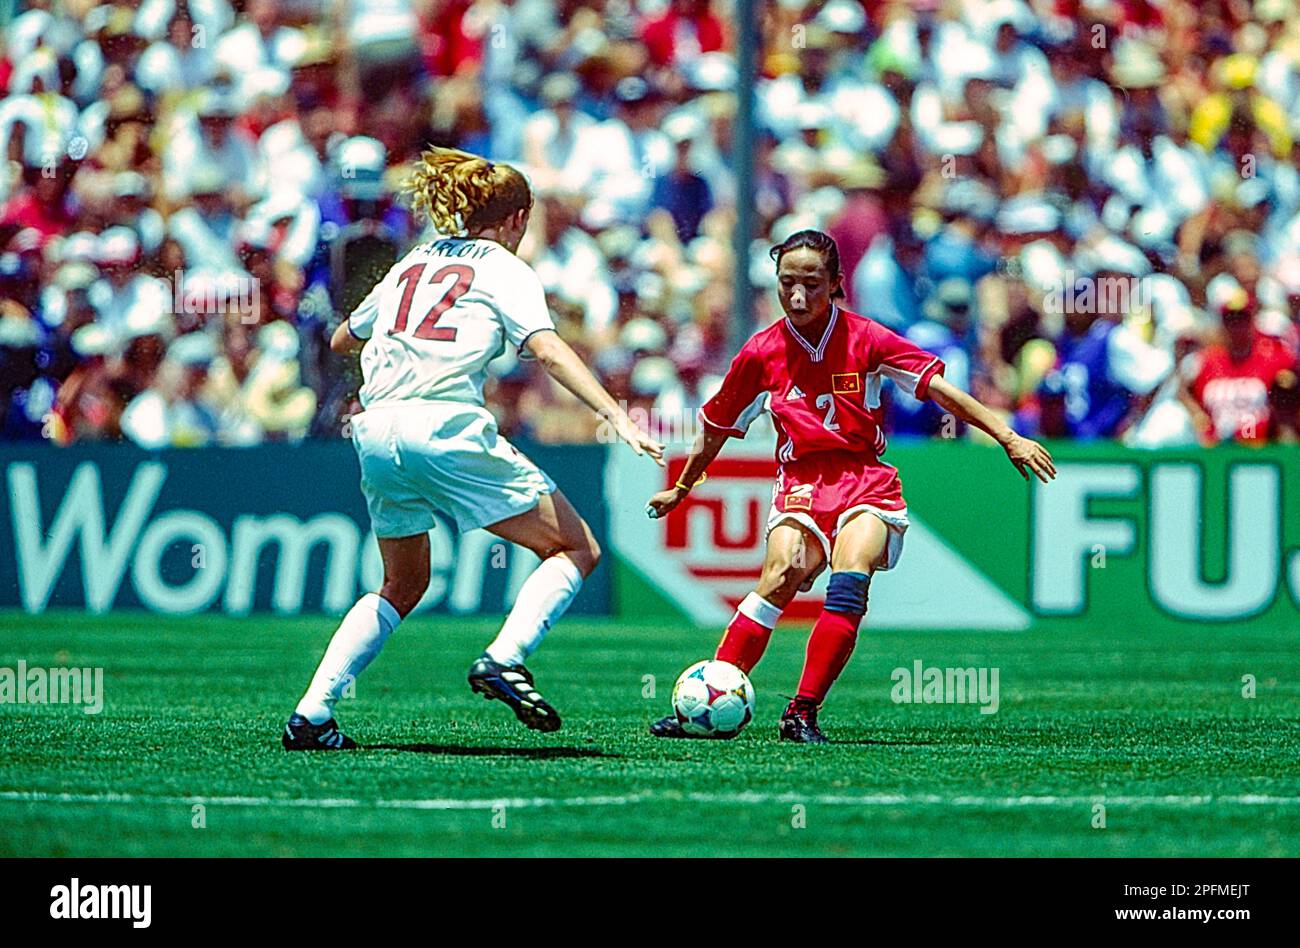 Wang Liping (CHN) en finale USA contre CHN lors de la coupe du monde de football féminin FIFA 1999. Banque D'Images